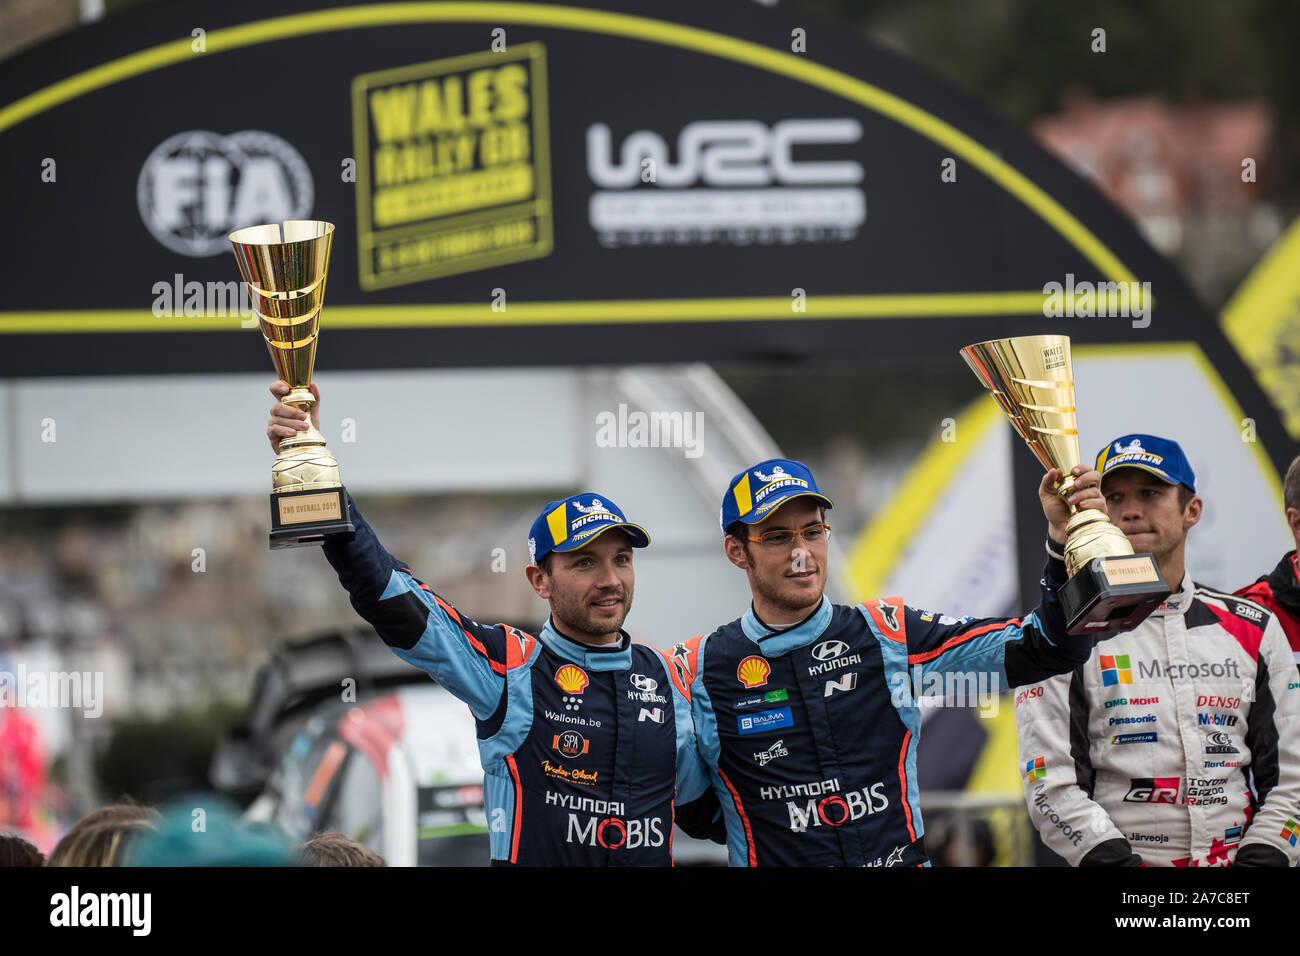 Thierry Neuville et Nicolas Gilsoul dans le podium lors de la cérémonie de clôture des célébrations de la WRC 2019 Wales Rally GB à Llandudno, au Pays de Galles, Royaume-Uni Banque D'Images